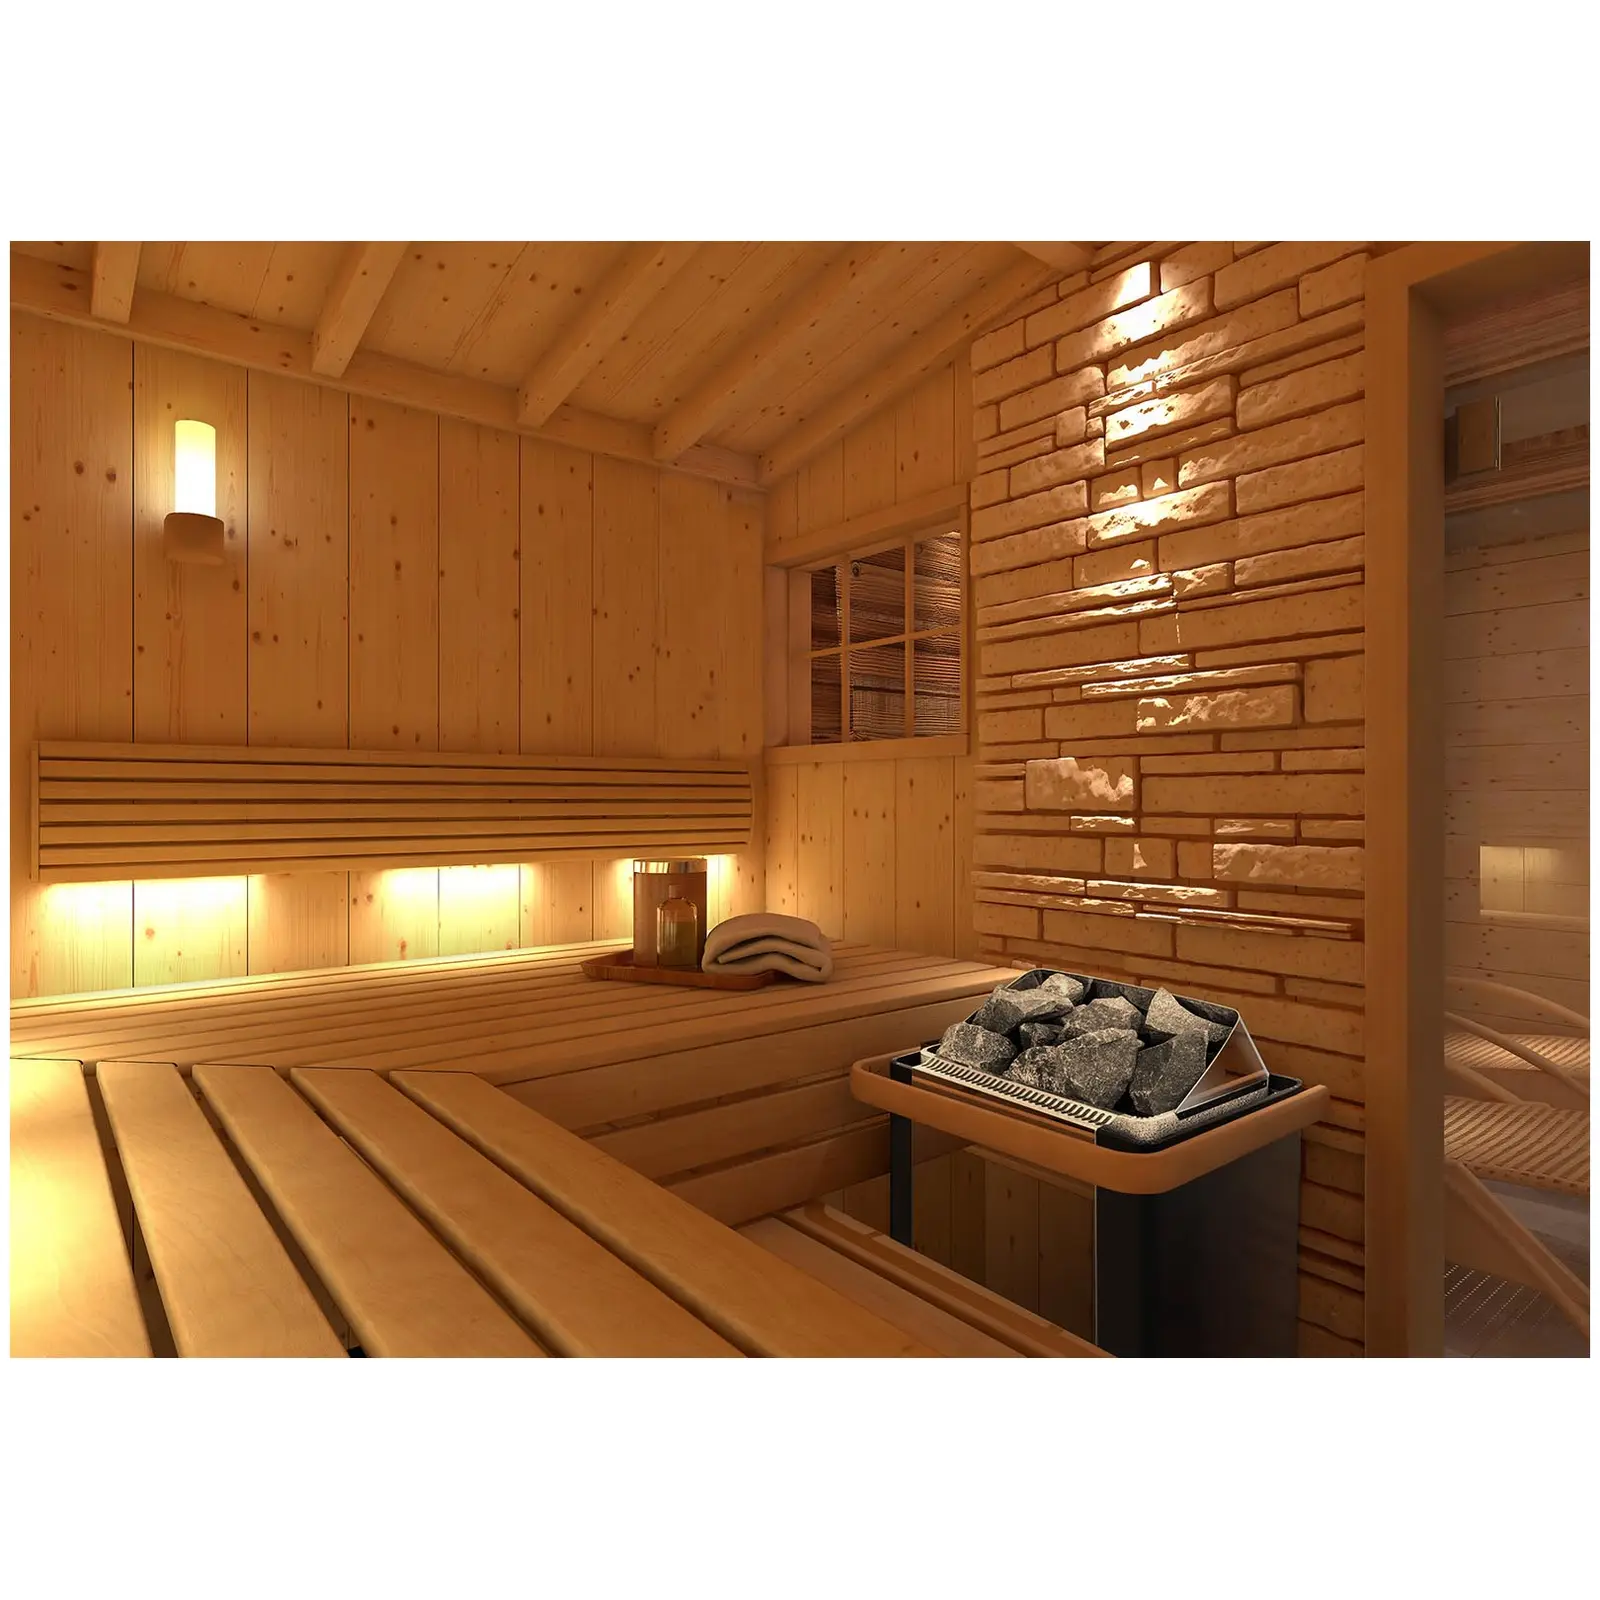 Piec do sauny - elektryczny - 9 kW